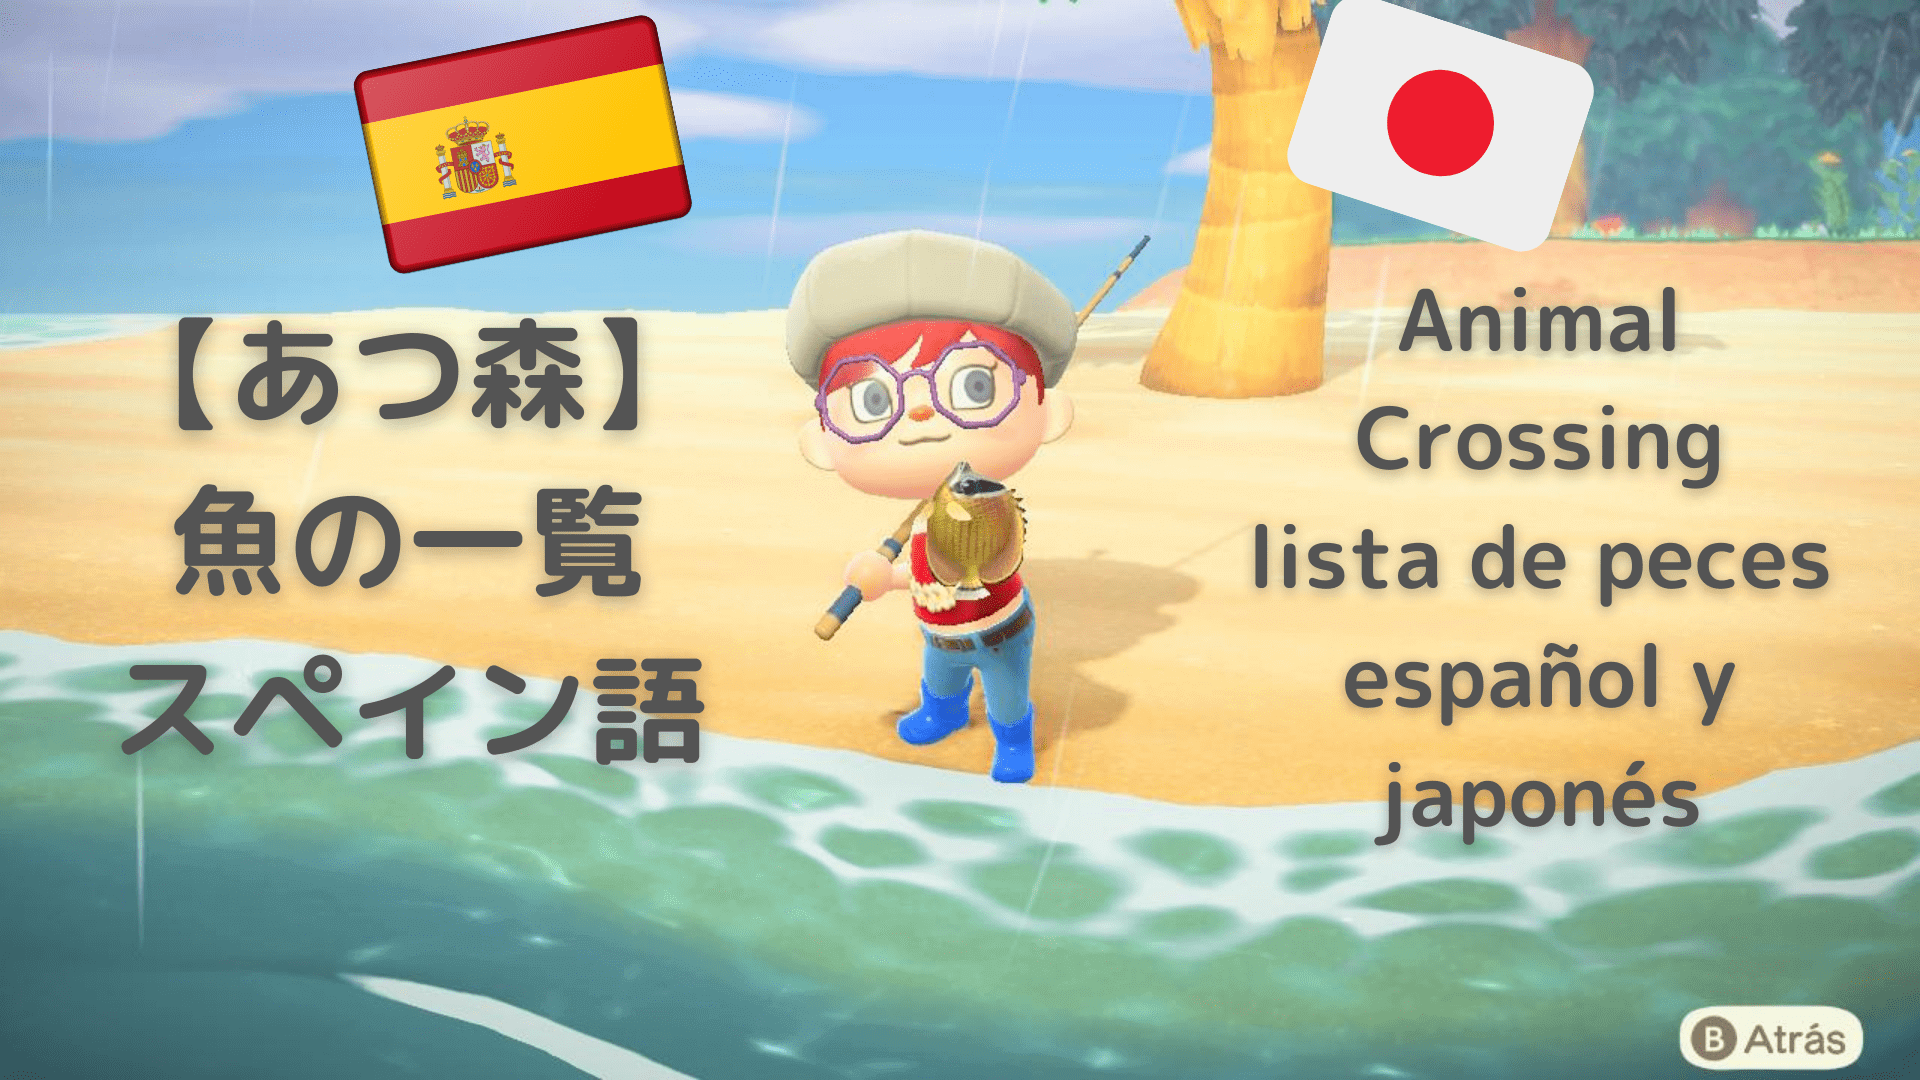 あつ森 スペイン語で魚の一覧 日本語付き Animal Crossing Peces シスカーにおいでよ